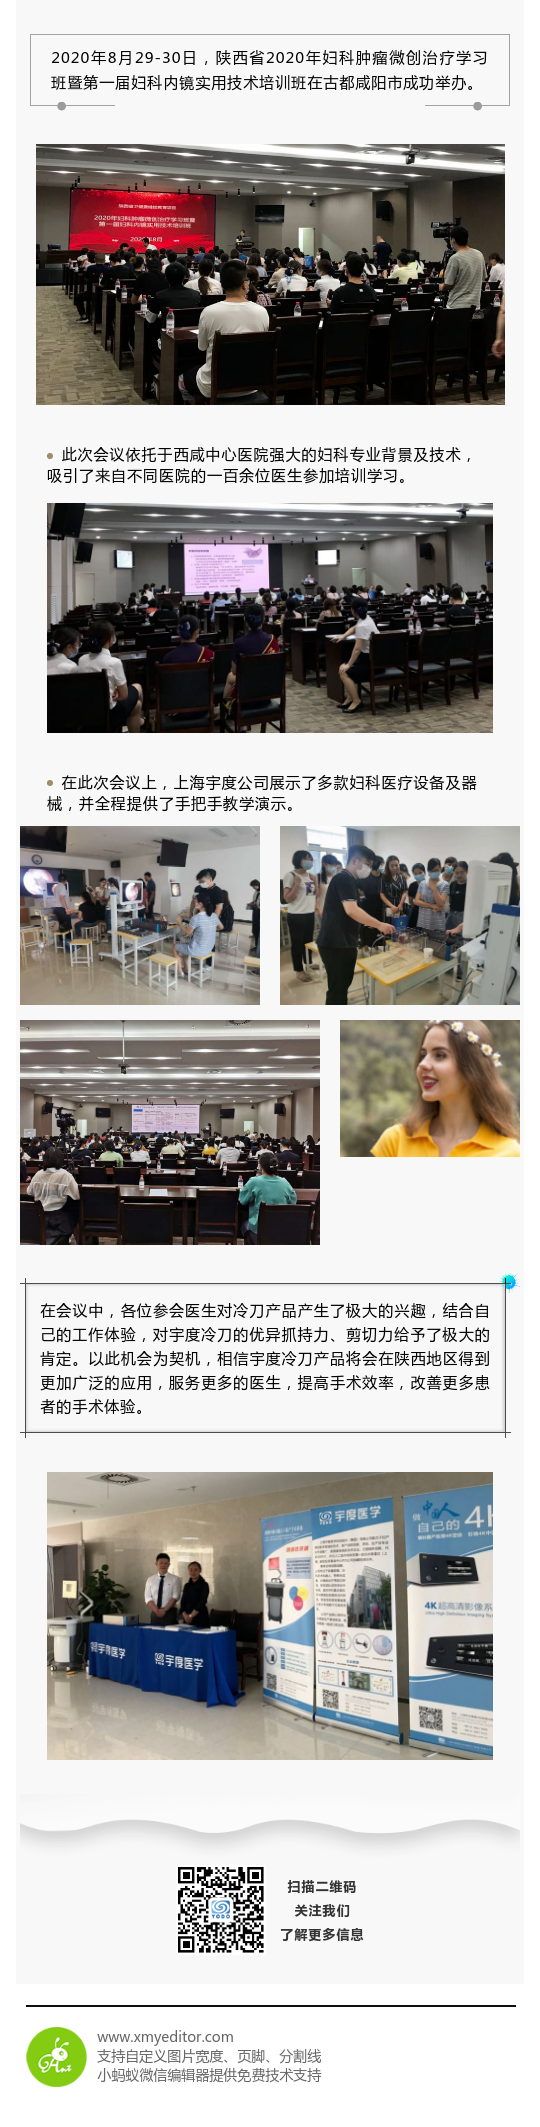 祝贺陕西省2020年妇科肿瘤微创治疗学习班成功举办